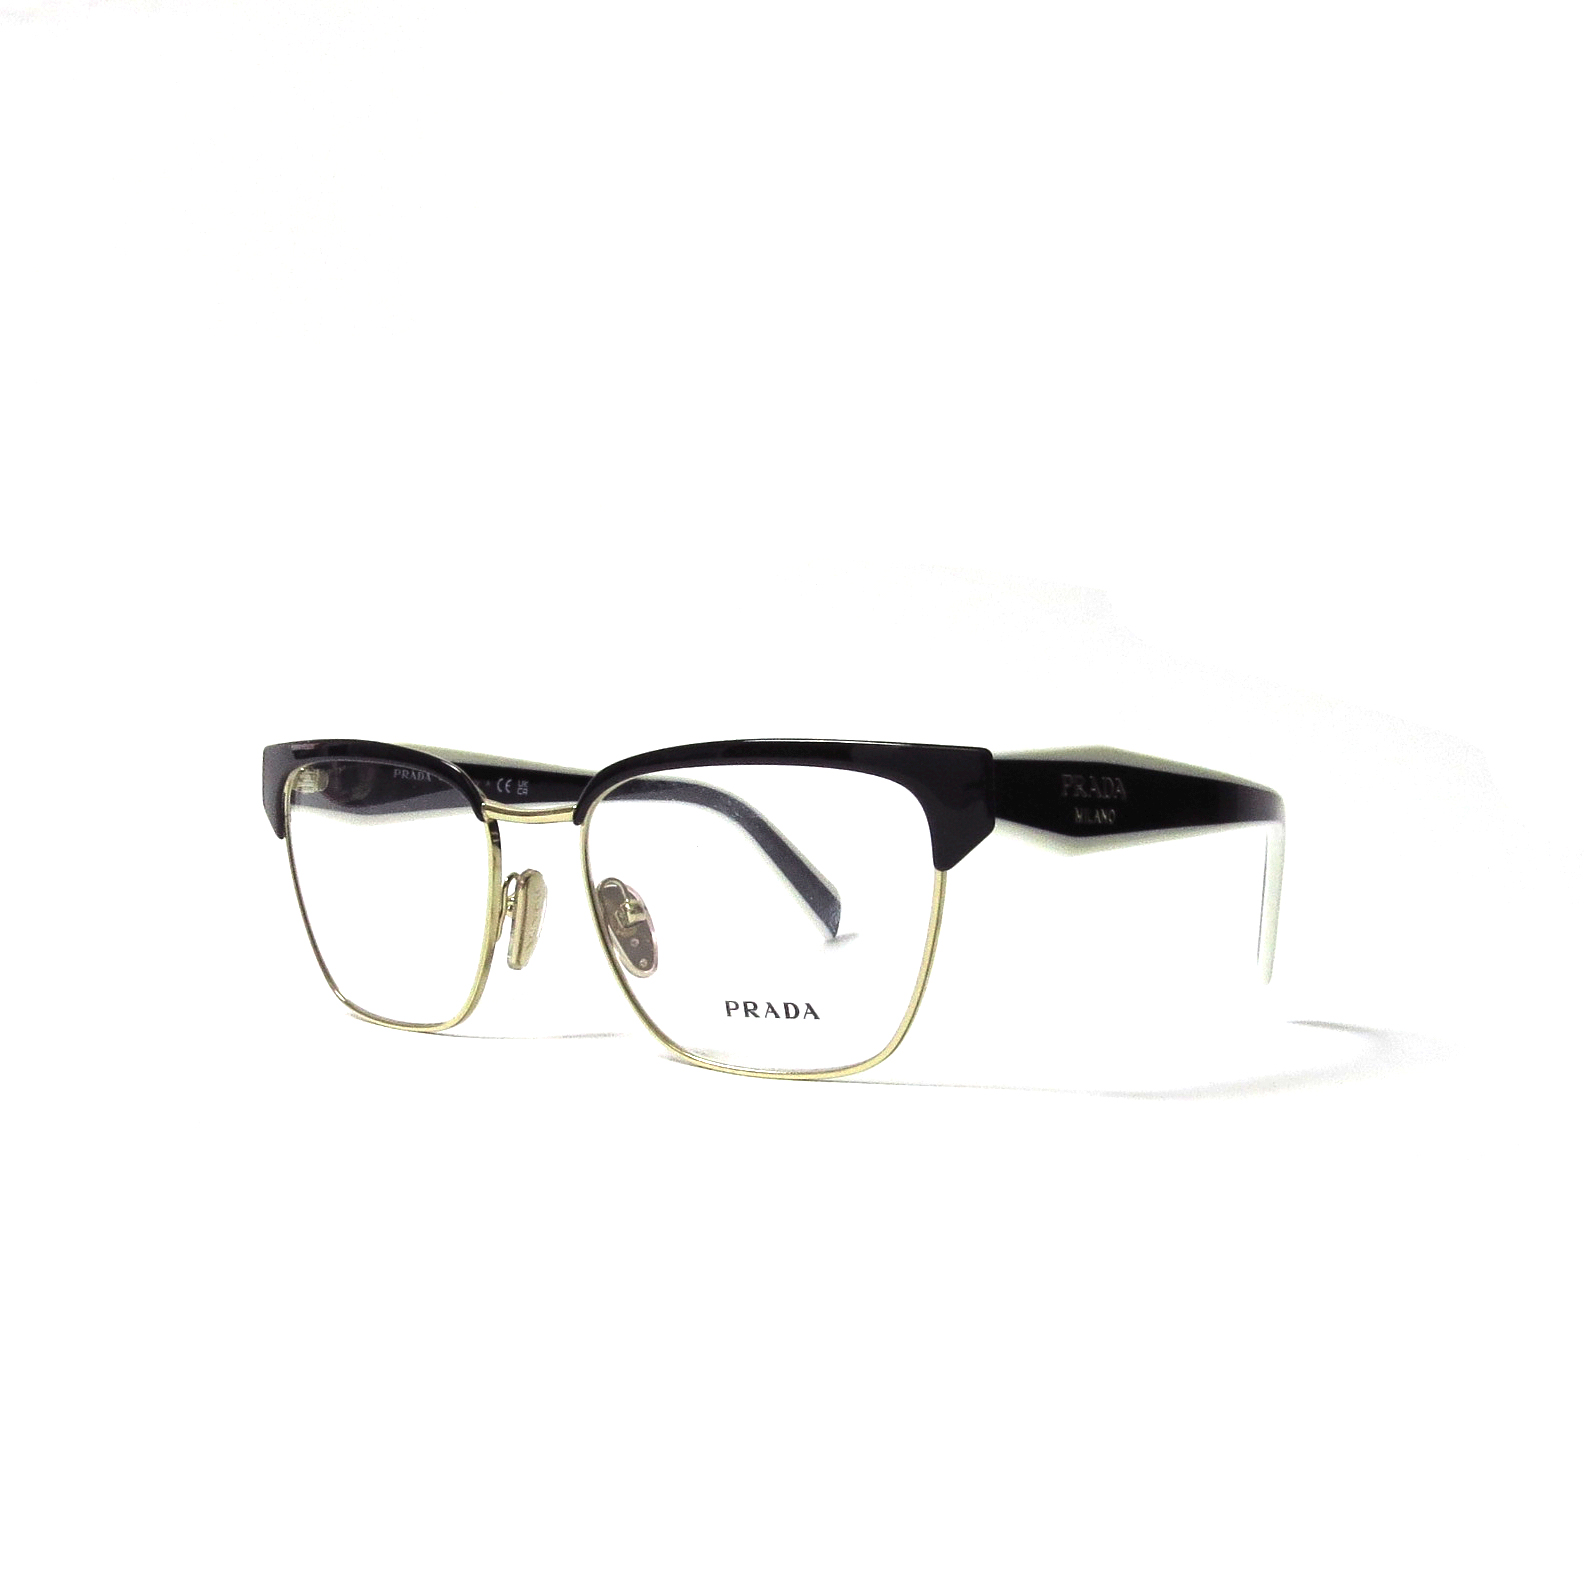 Óptica las | PRADA - 65VY - Óptica las gafas